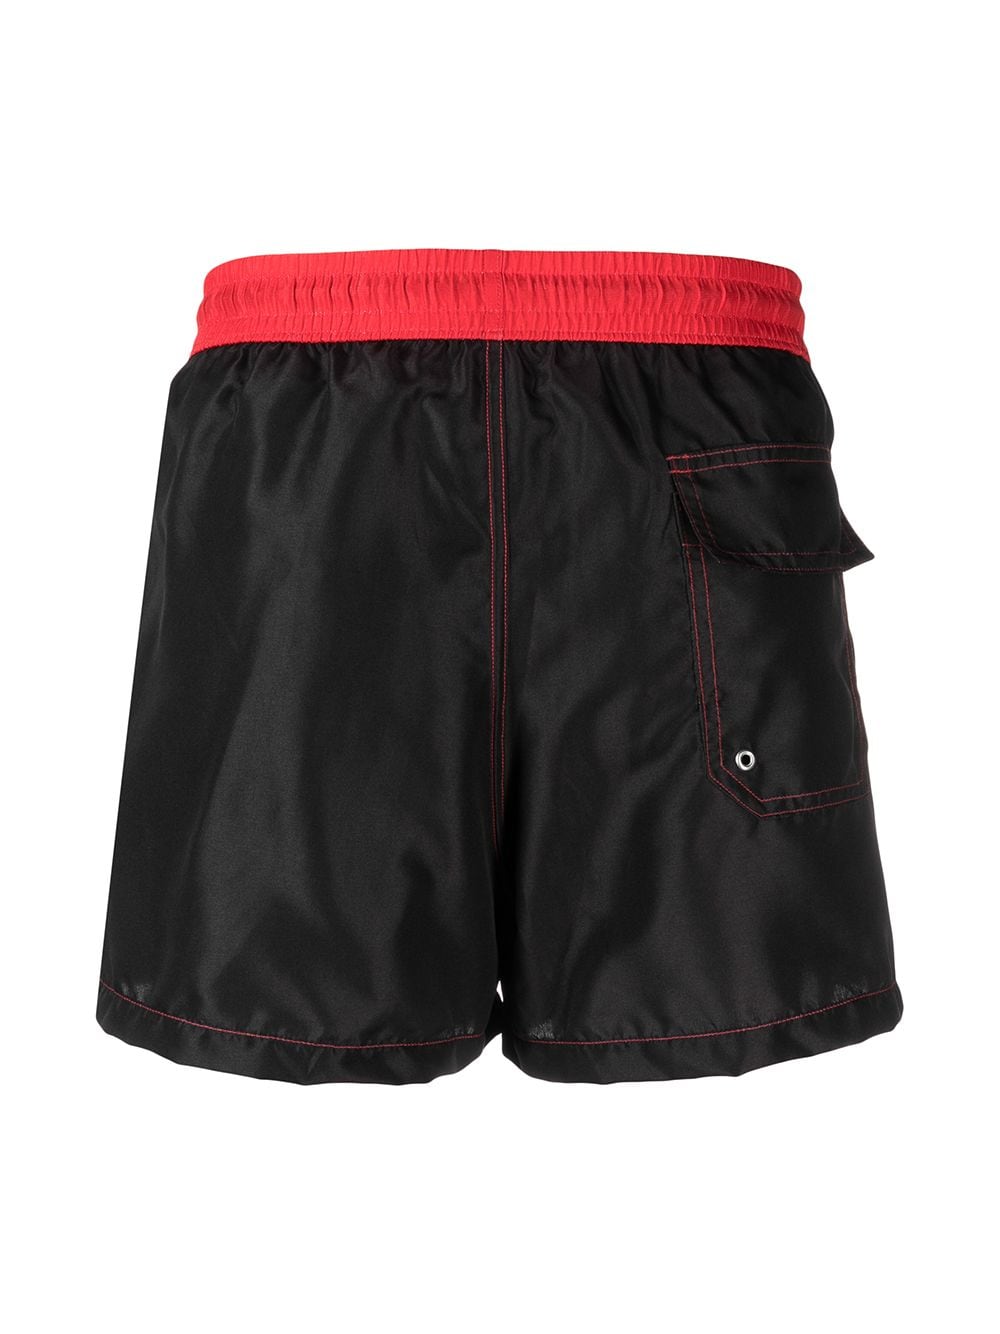 Pantaloncini da bagno bicolore rosso/nero